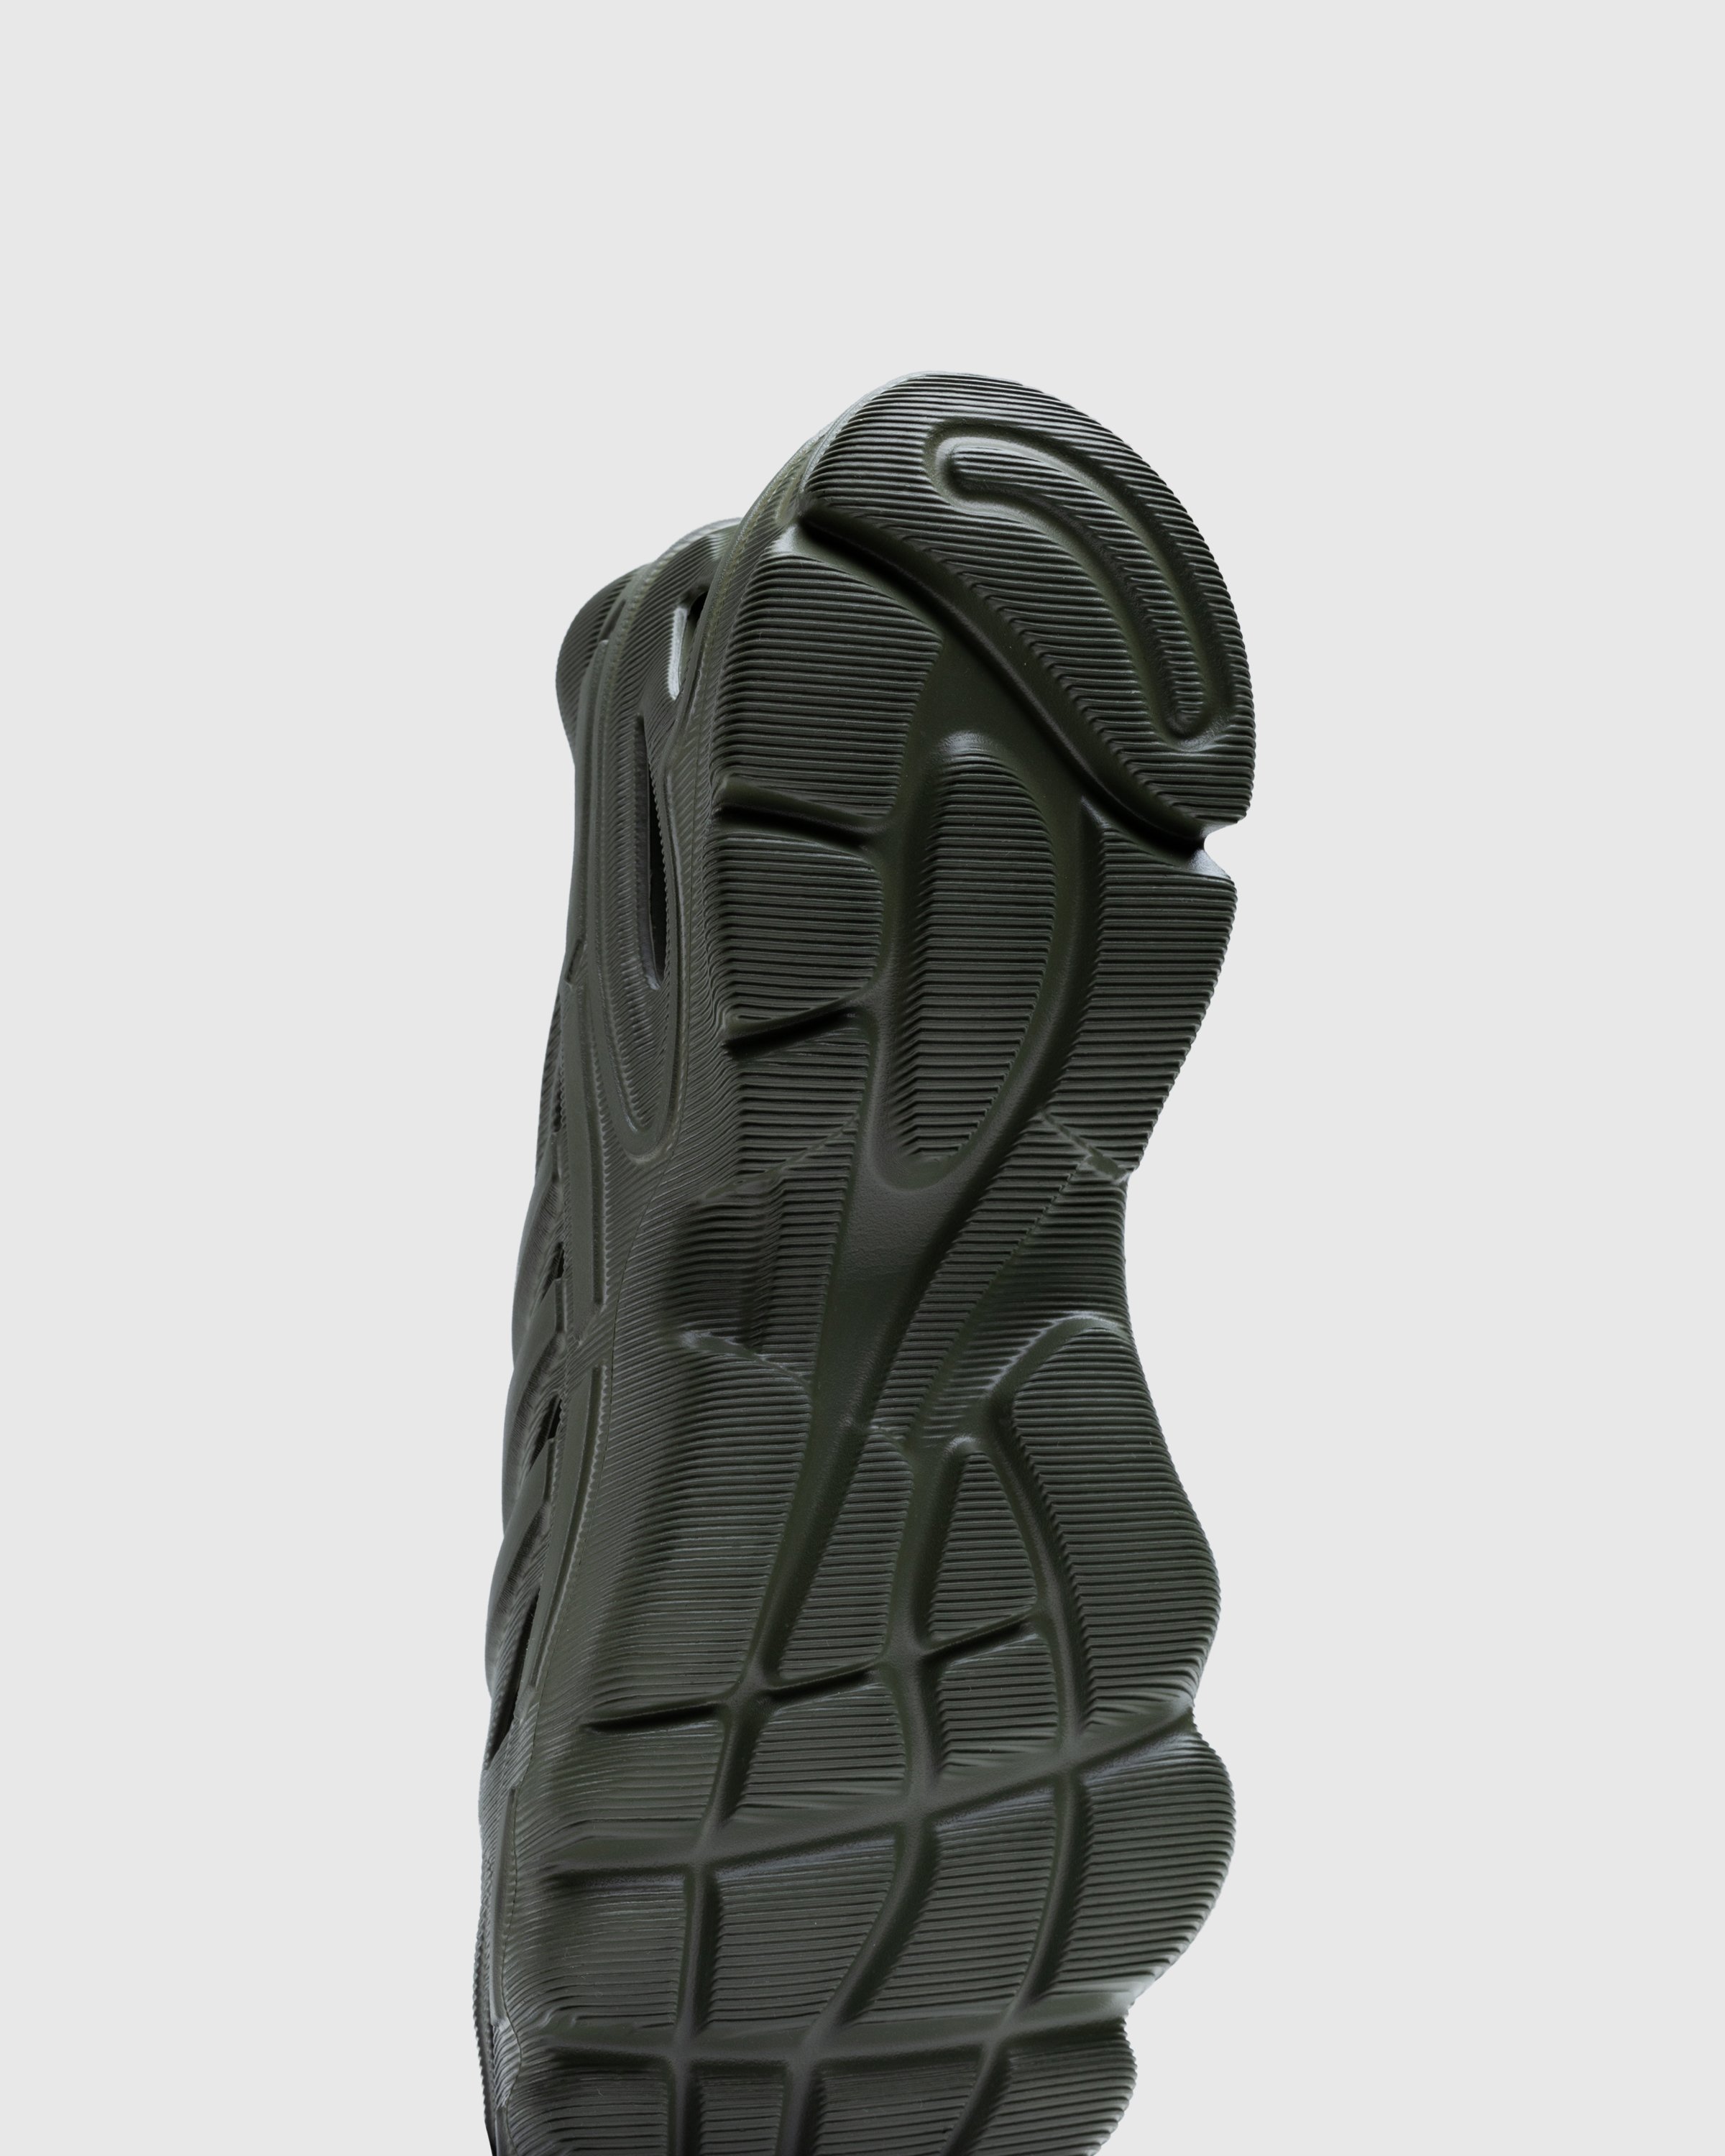 Adidas - Adifom Supernova Focus Olive - Footwear - Green - Image 6